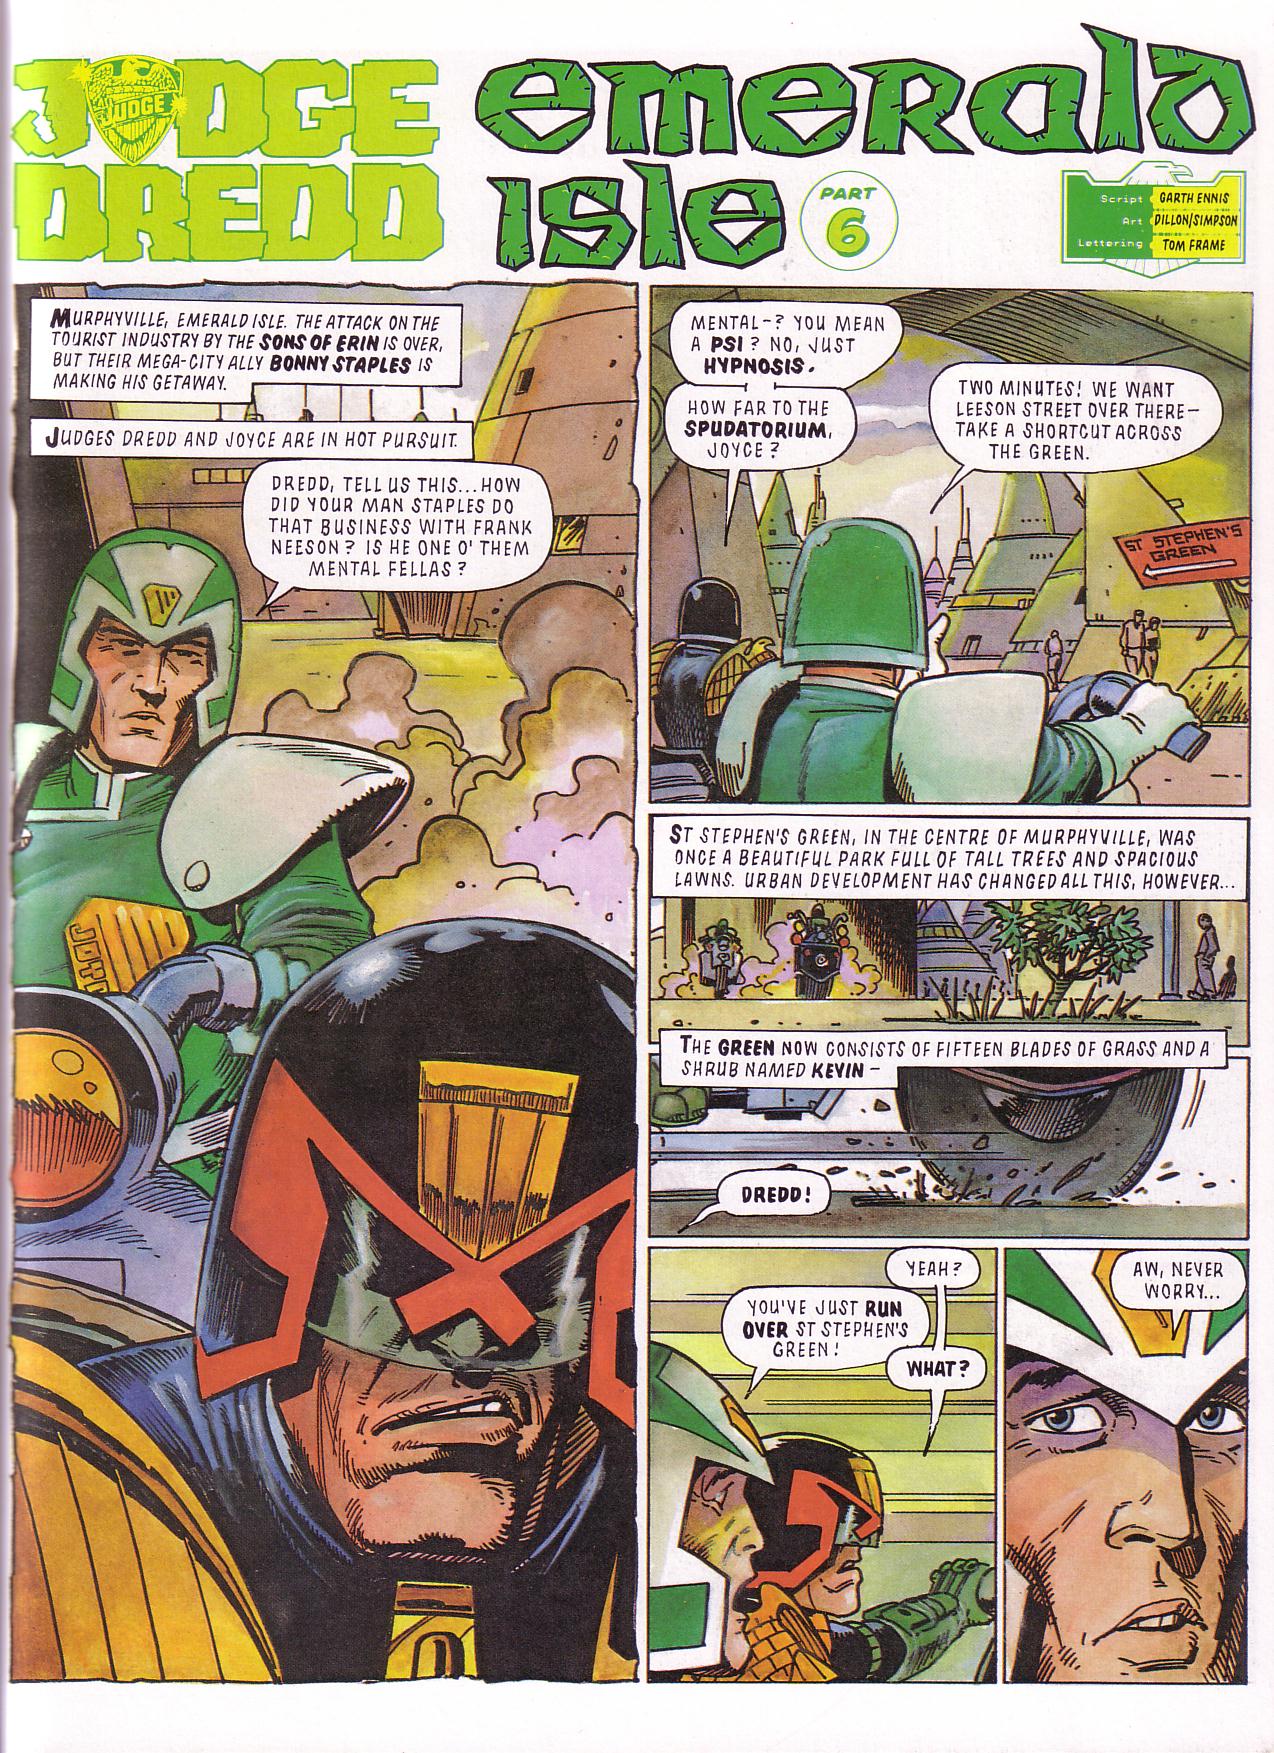 Read online Judge Dredd: Emerald Isle comic -  Issue # TPB - 37